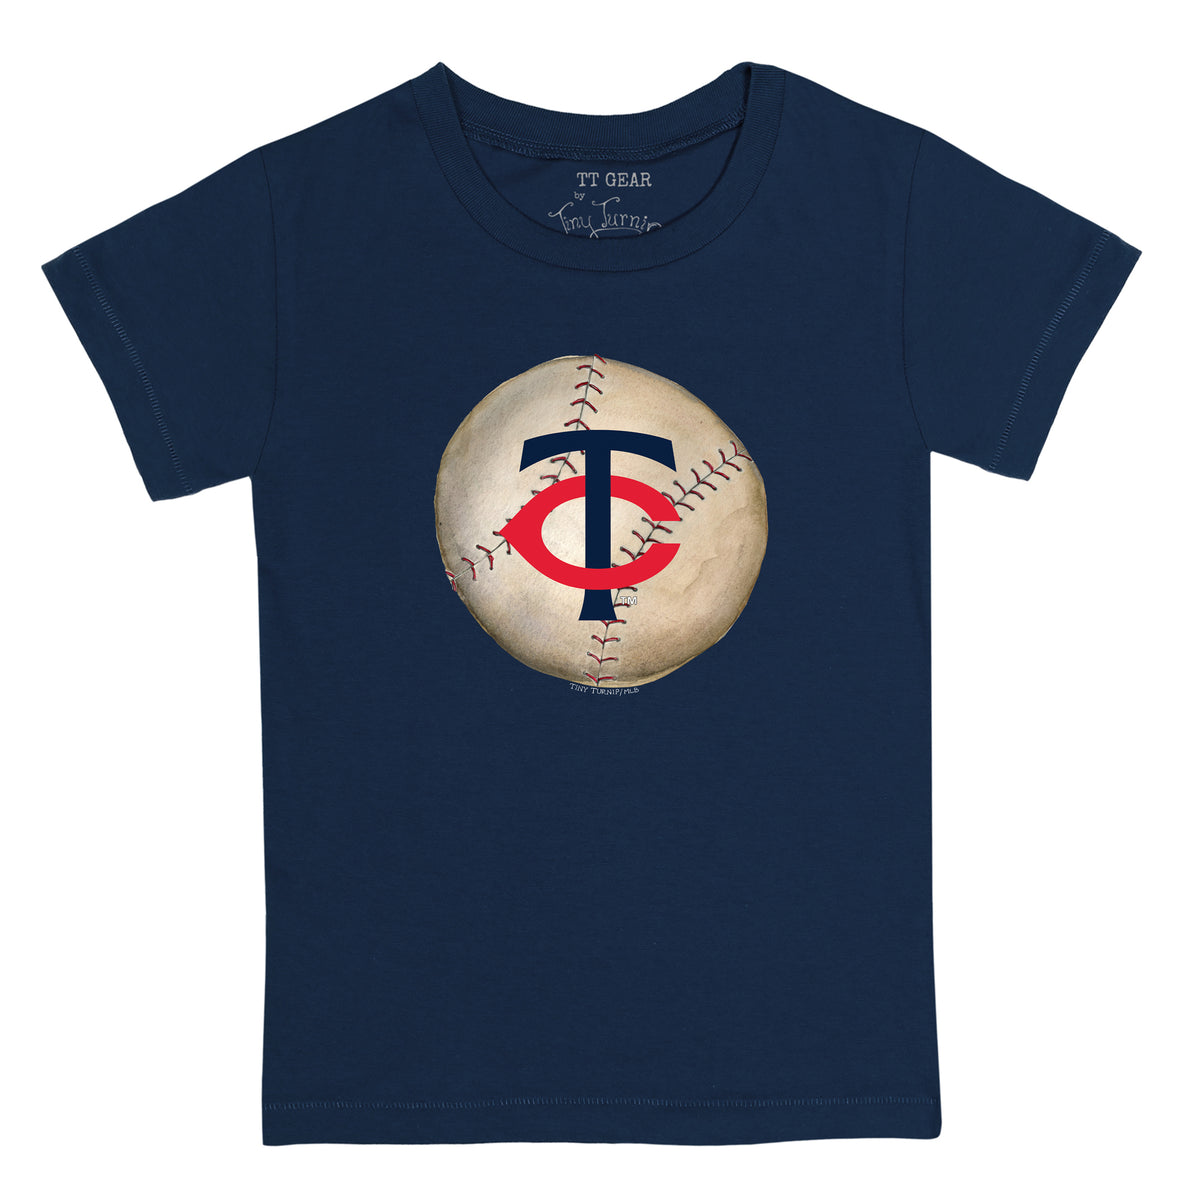 Minnesota Twins Shirt Jersey Navy Blue Youth Large TC Logo Baseball MLB